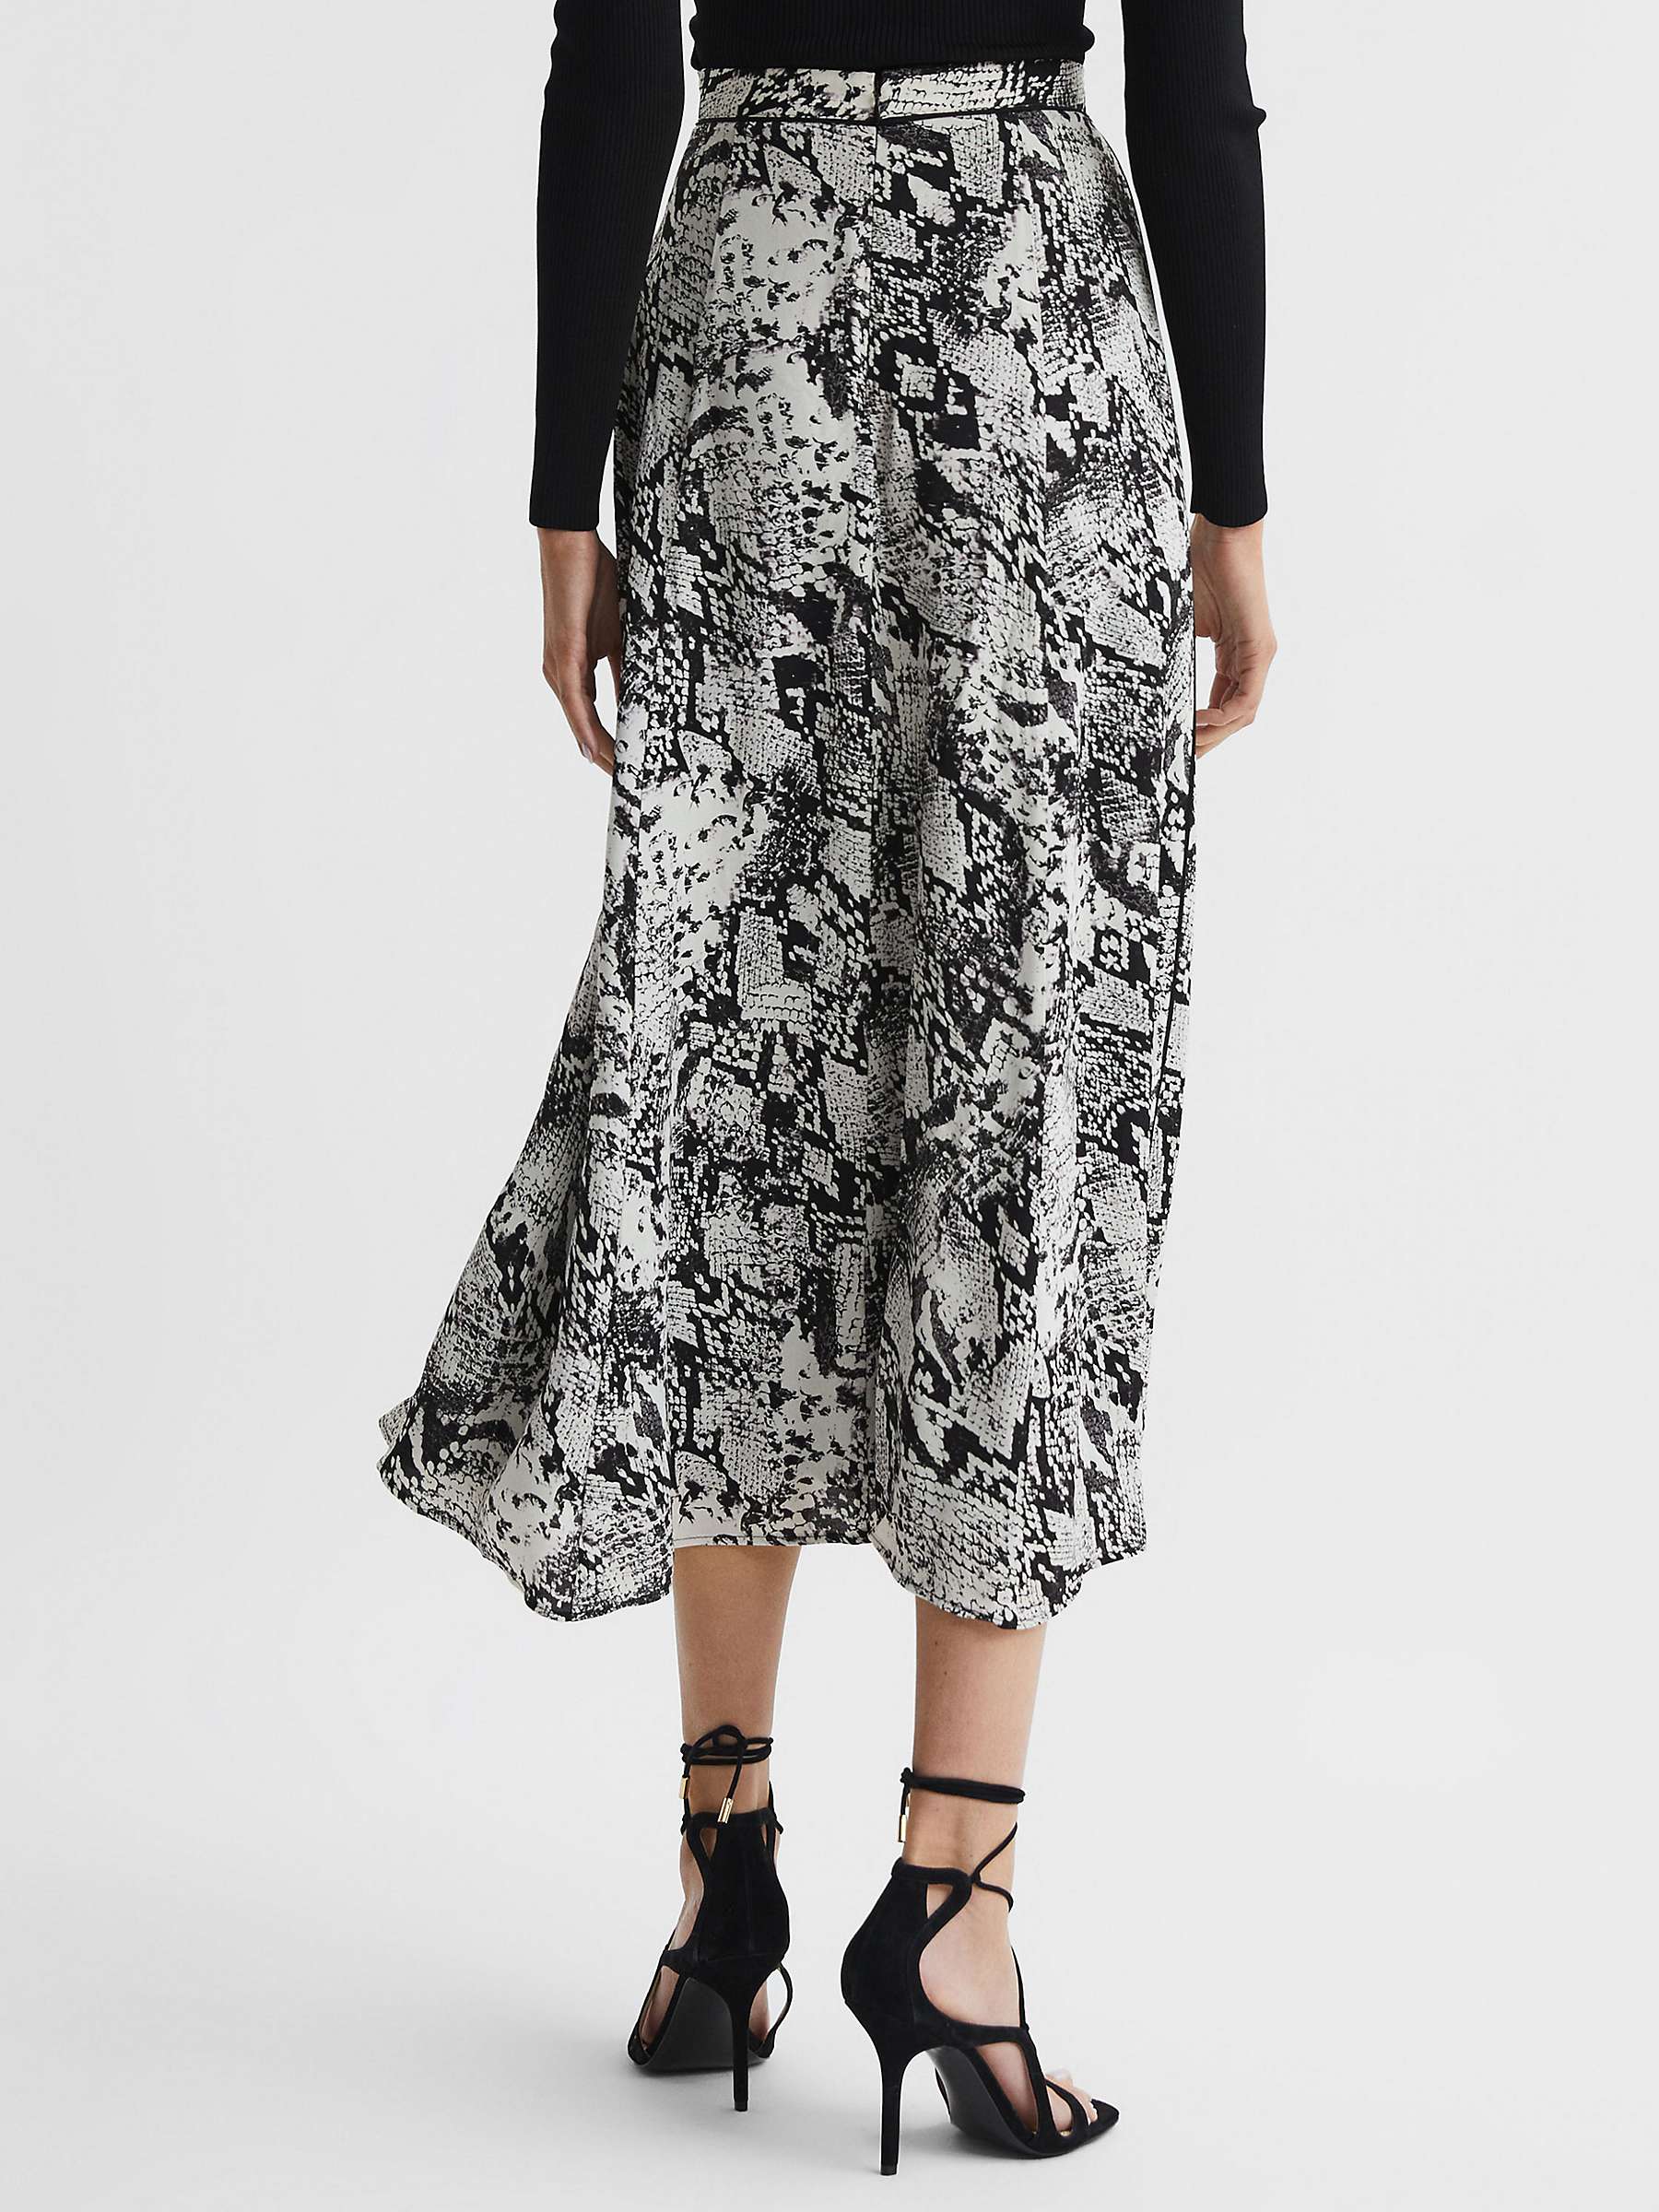 Reiss Katia Floral Print Skirt, Black at John Lewis & Partners